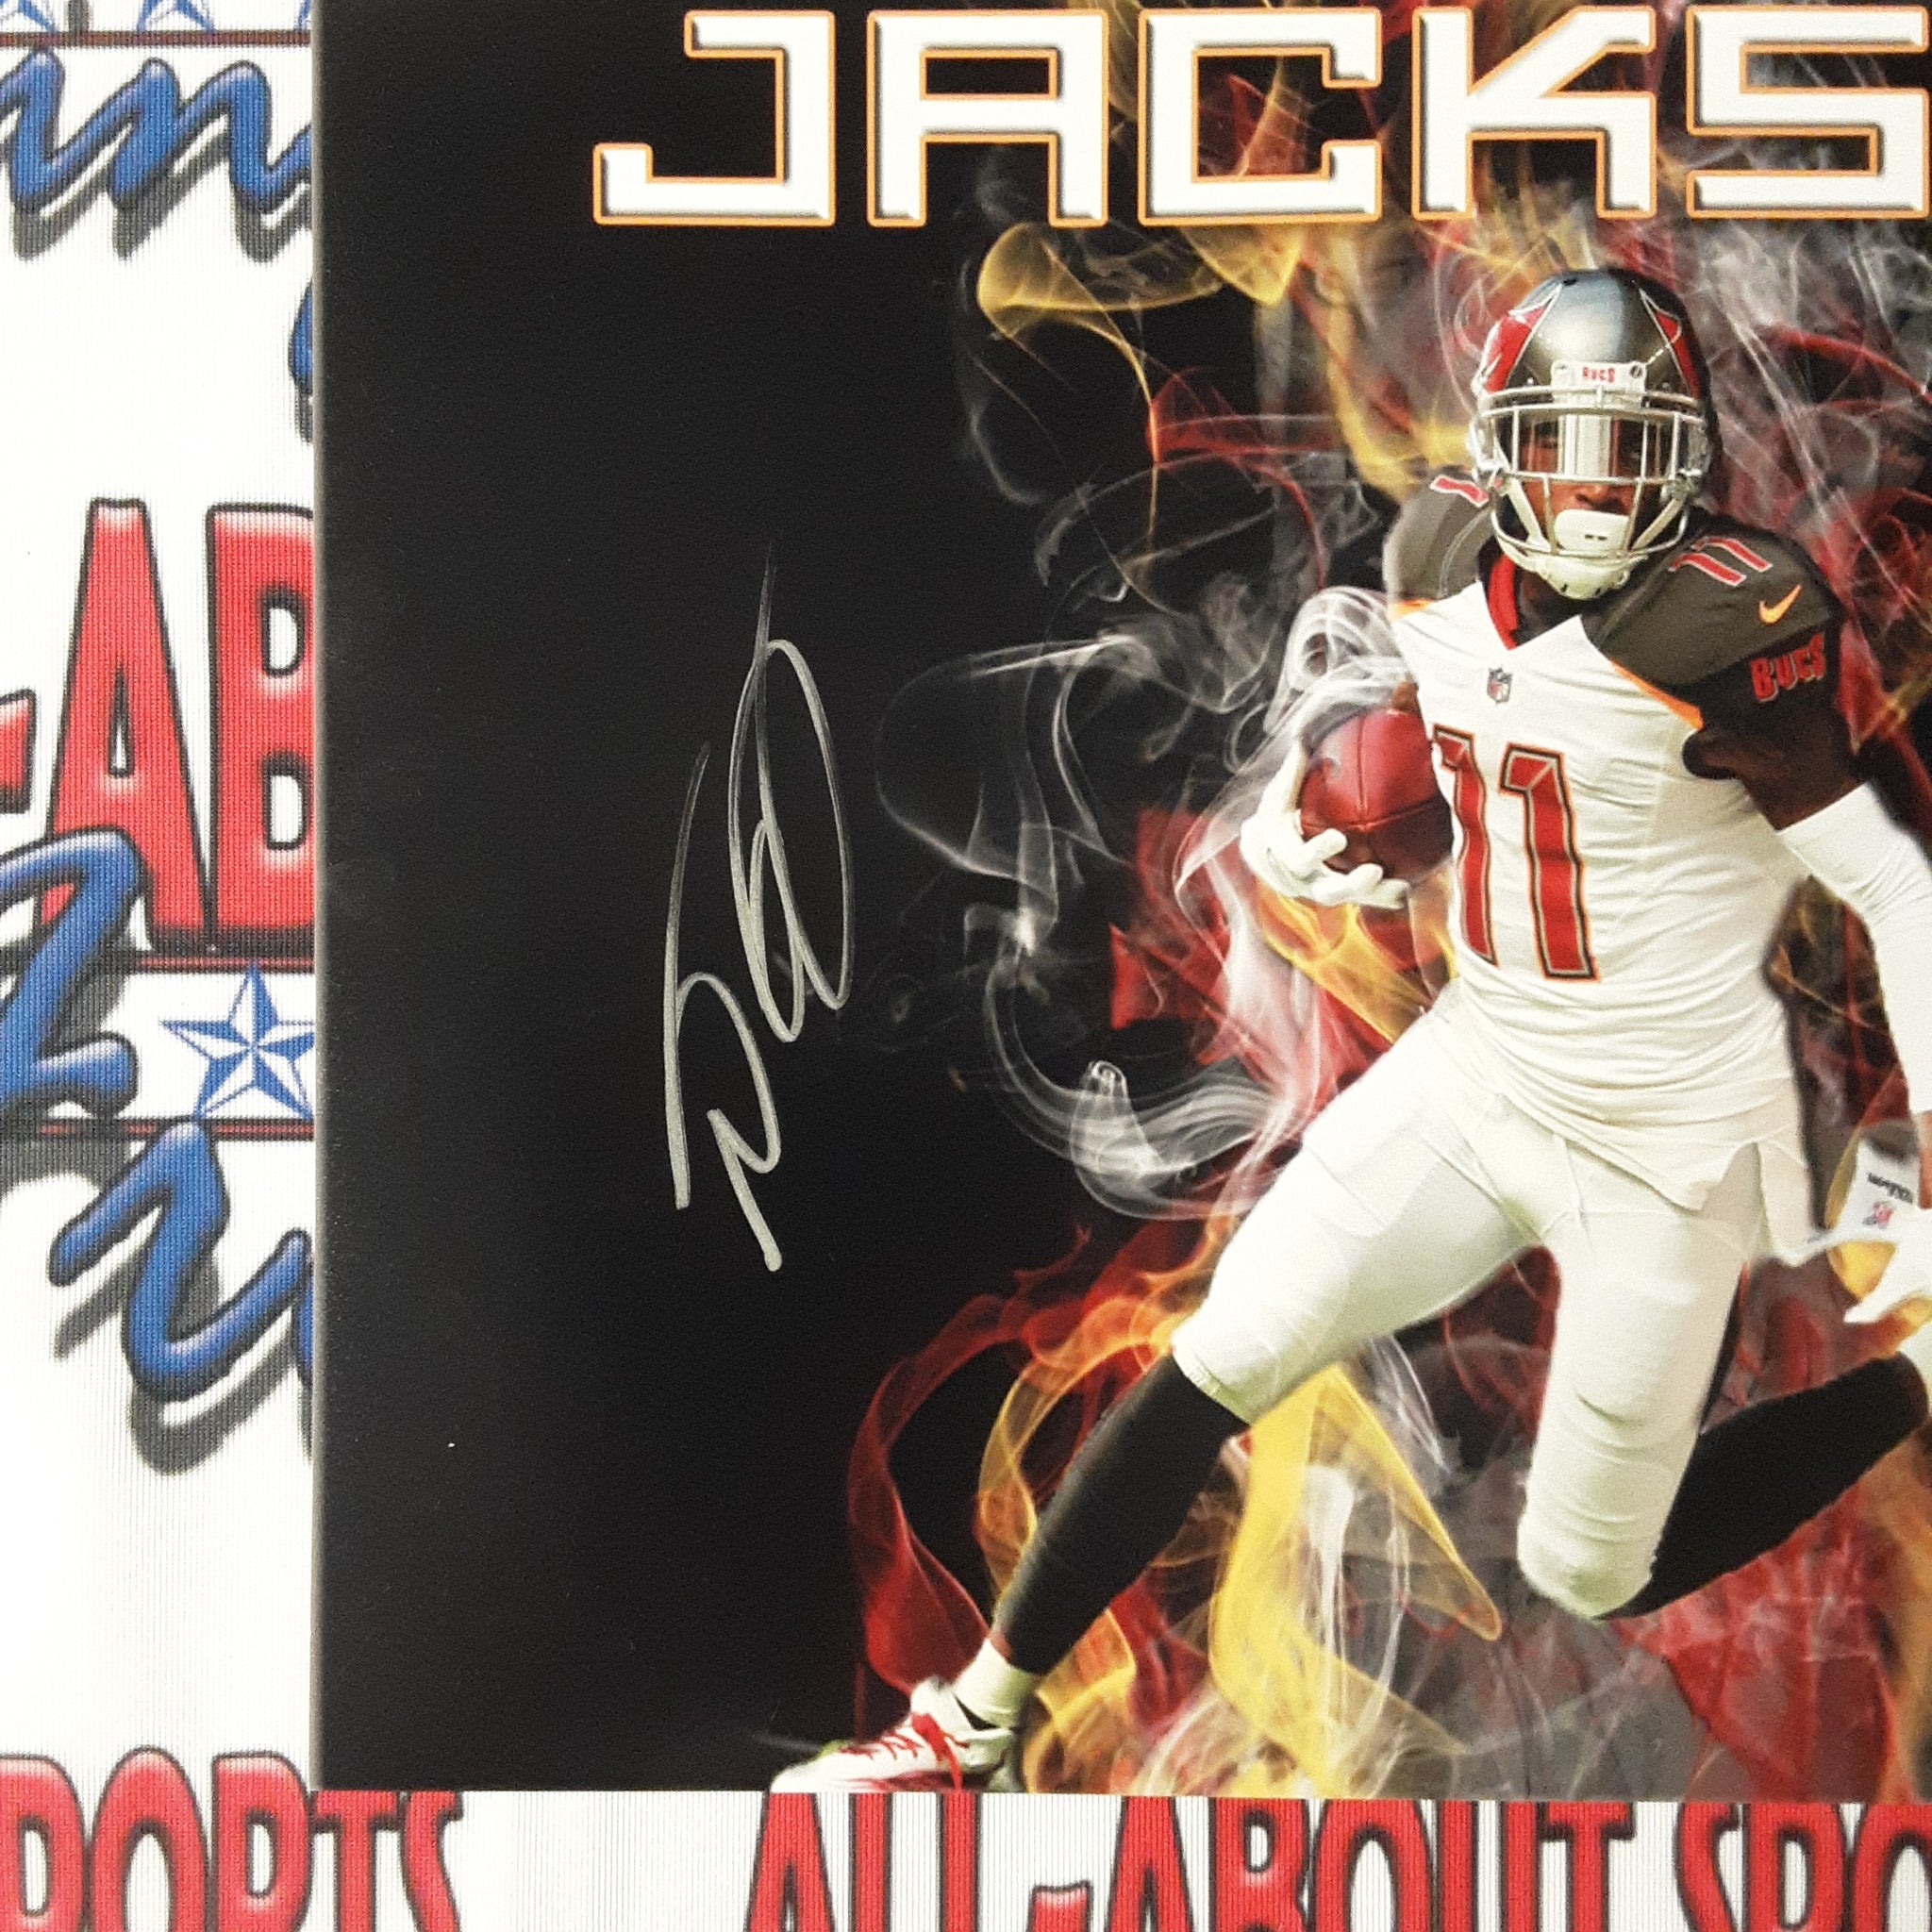 Desean Jackson Authentic Signed 11x14 Photo Autographed JSA.